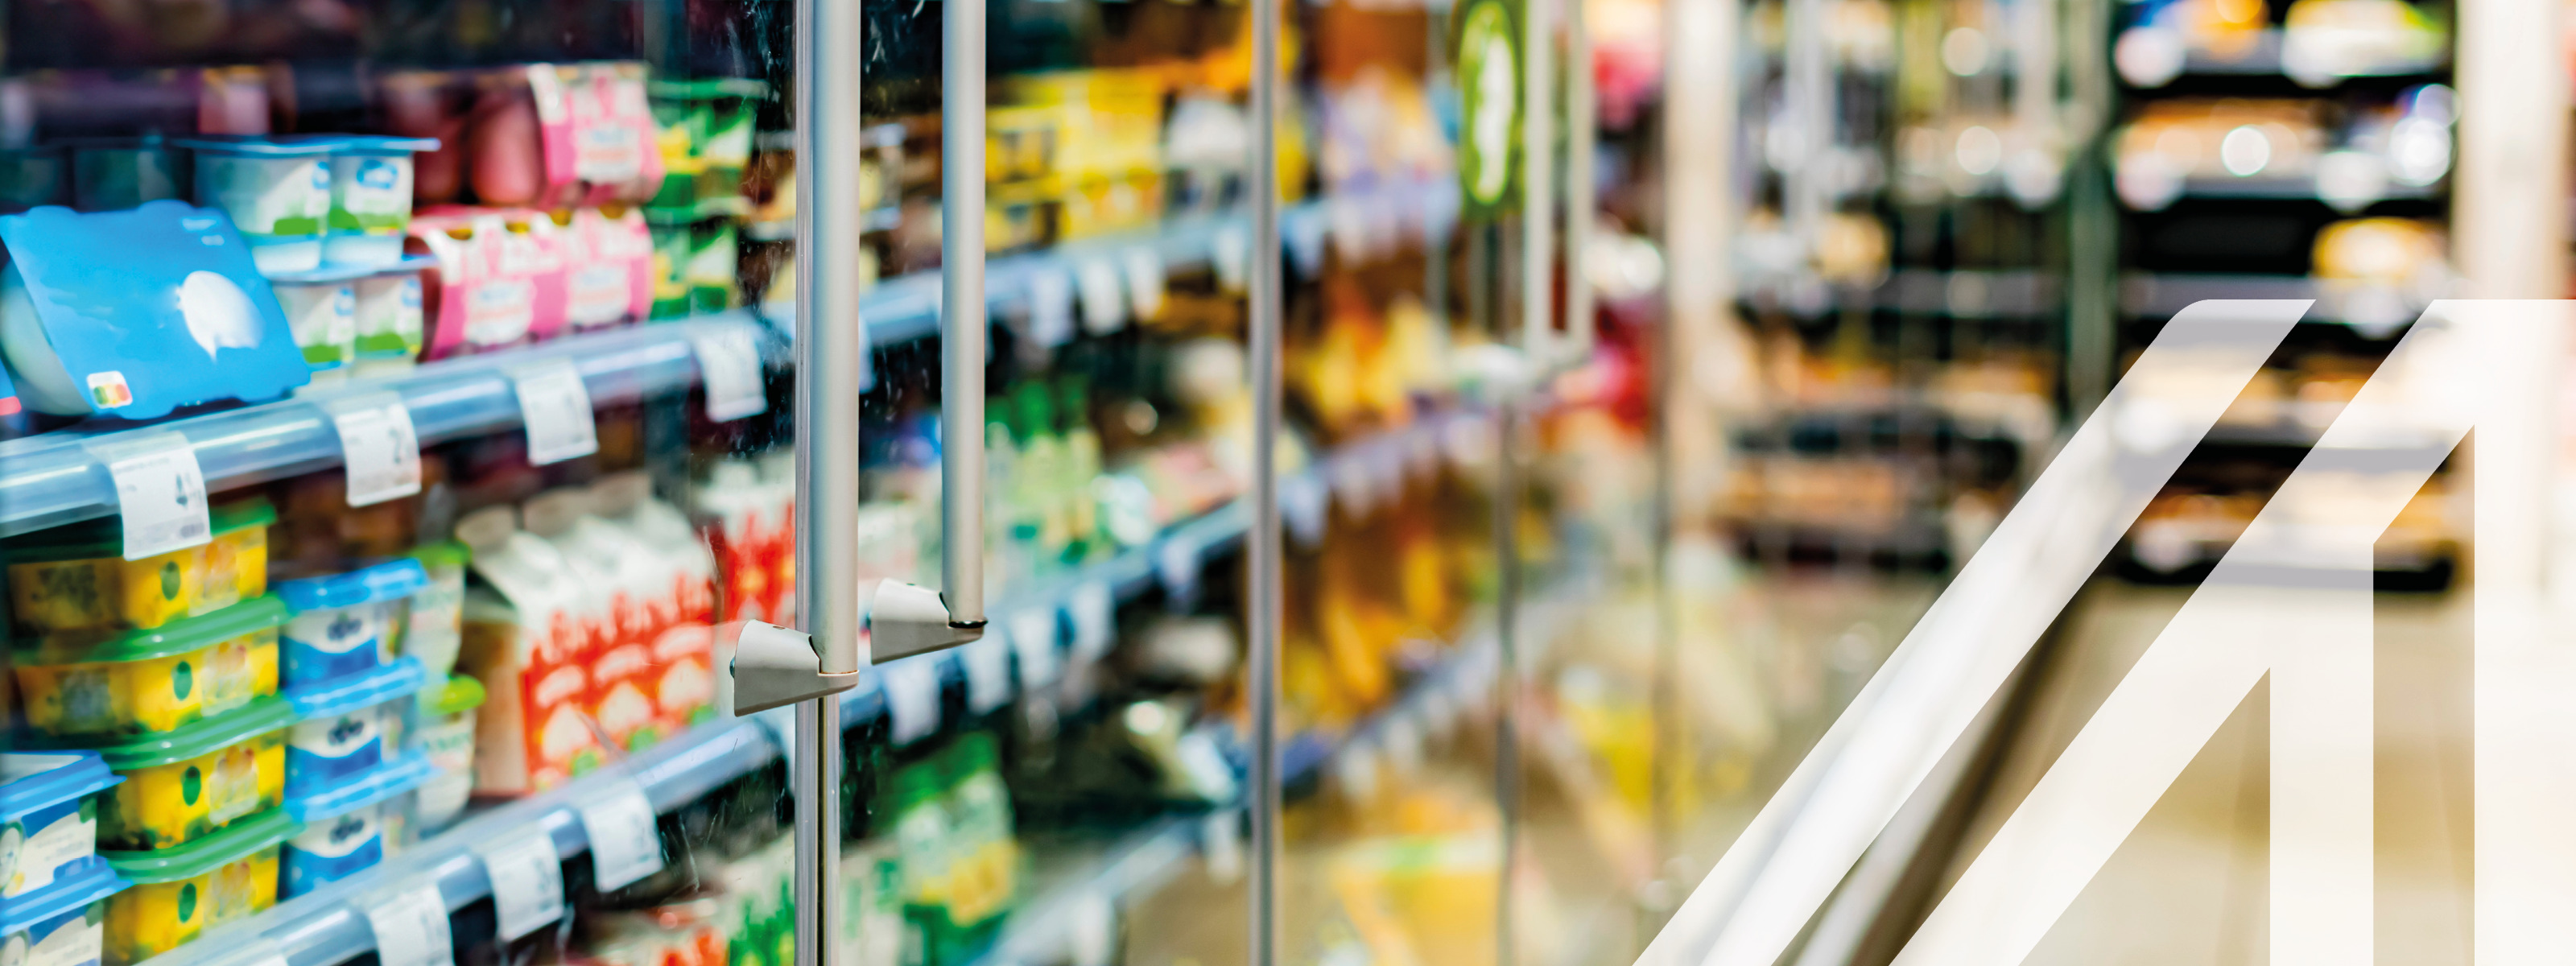 Einsortierte Lebensmittel in einem gewerblichen Kühlschrank eines Supermarktes